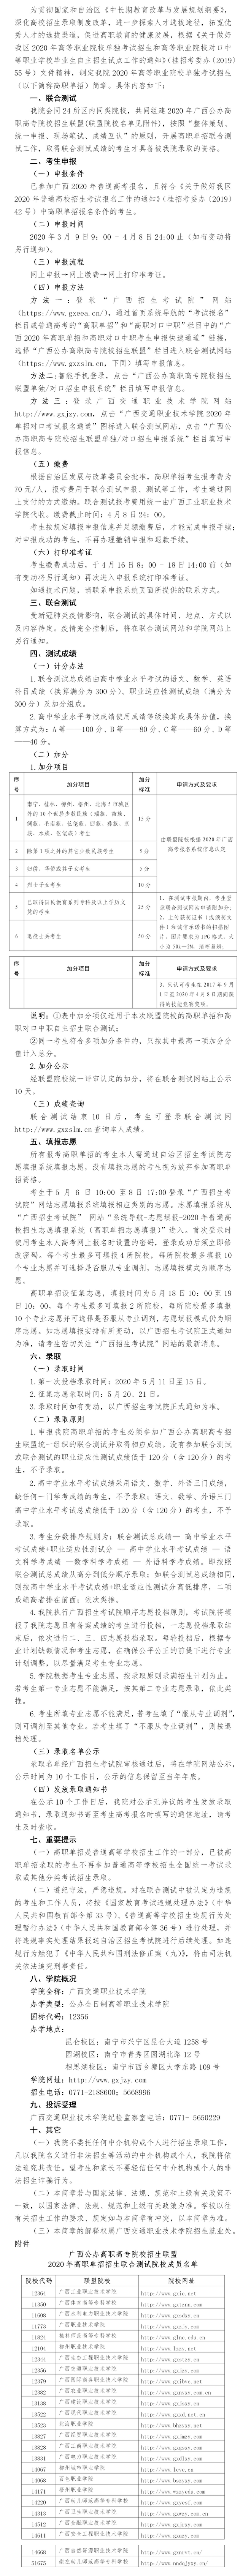 广西交通职业技术学院2020年高职单招招生简章